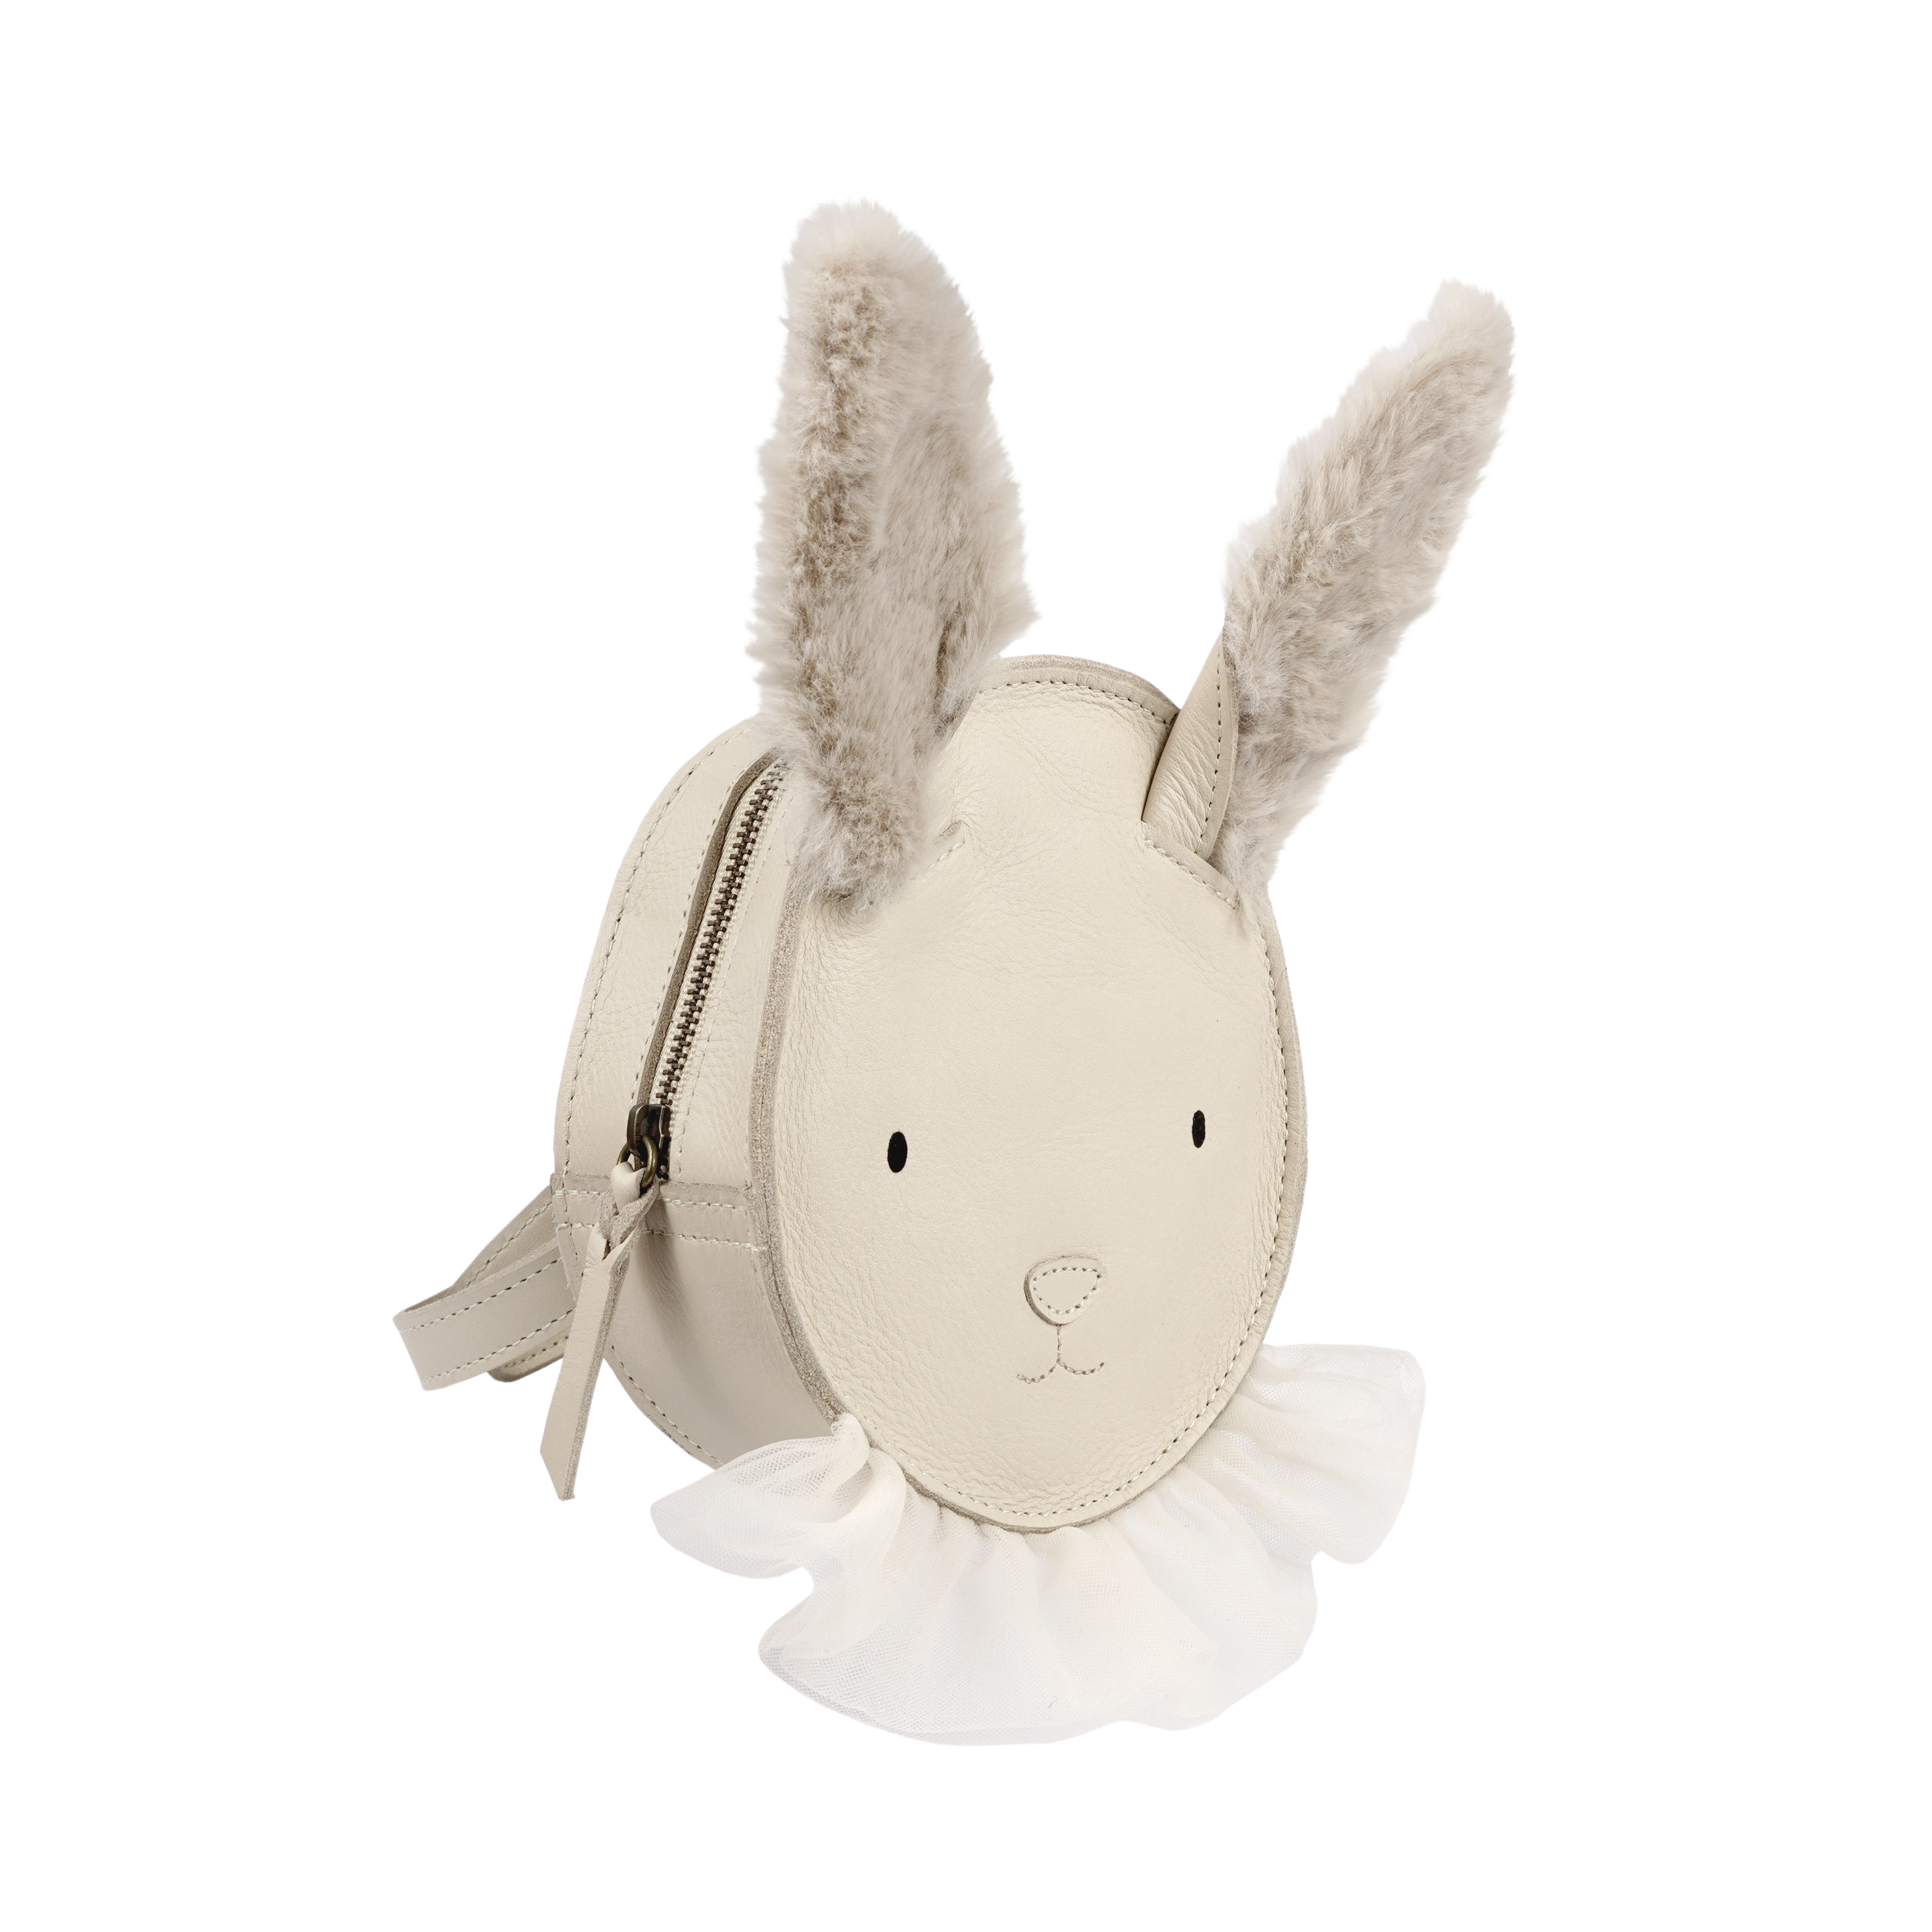 donsje amsterdam festie backpack - festive rabbit